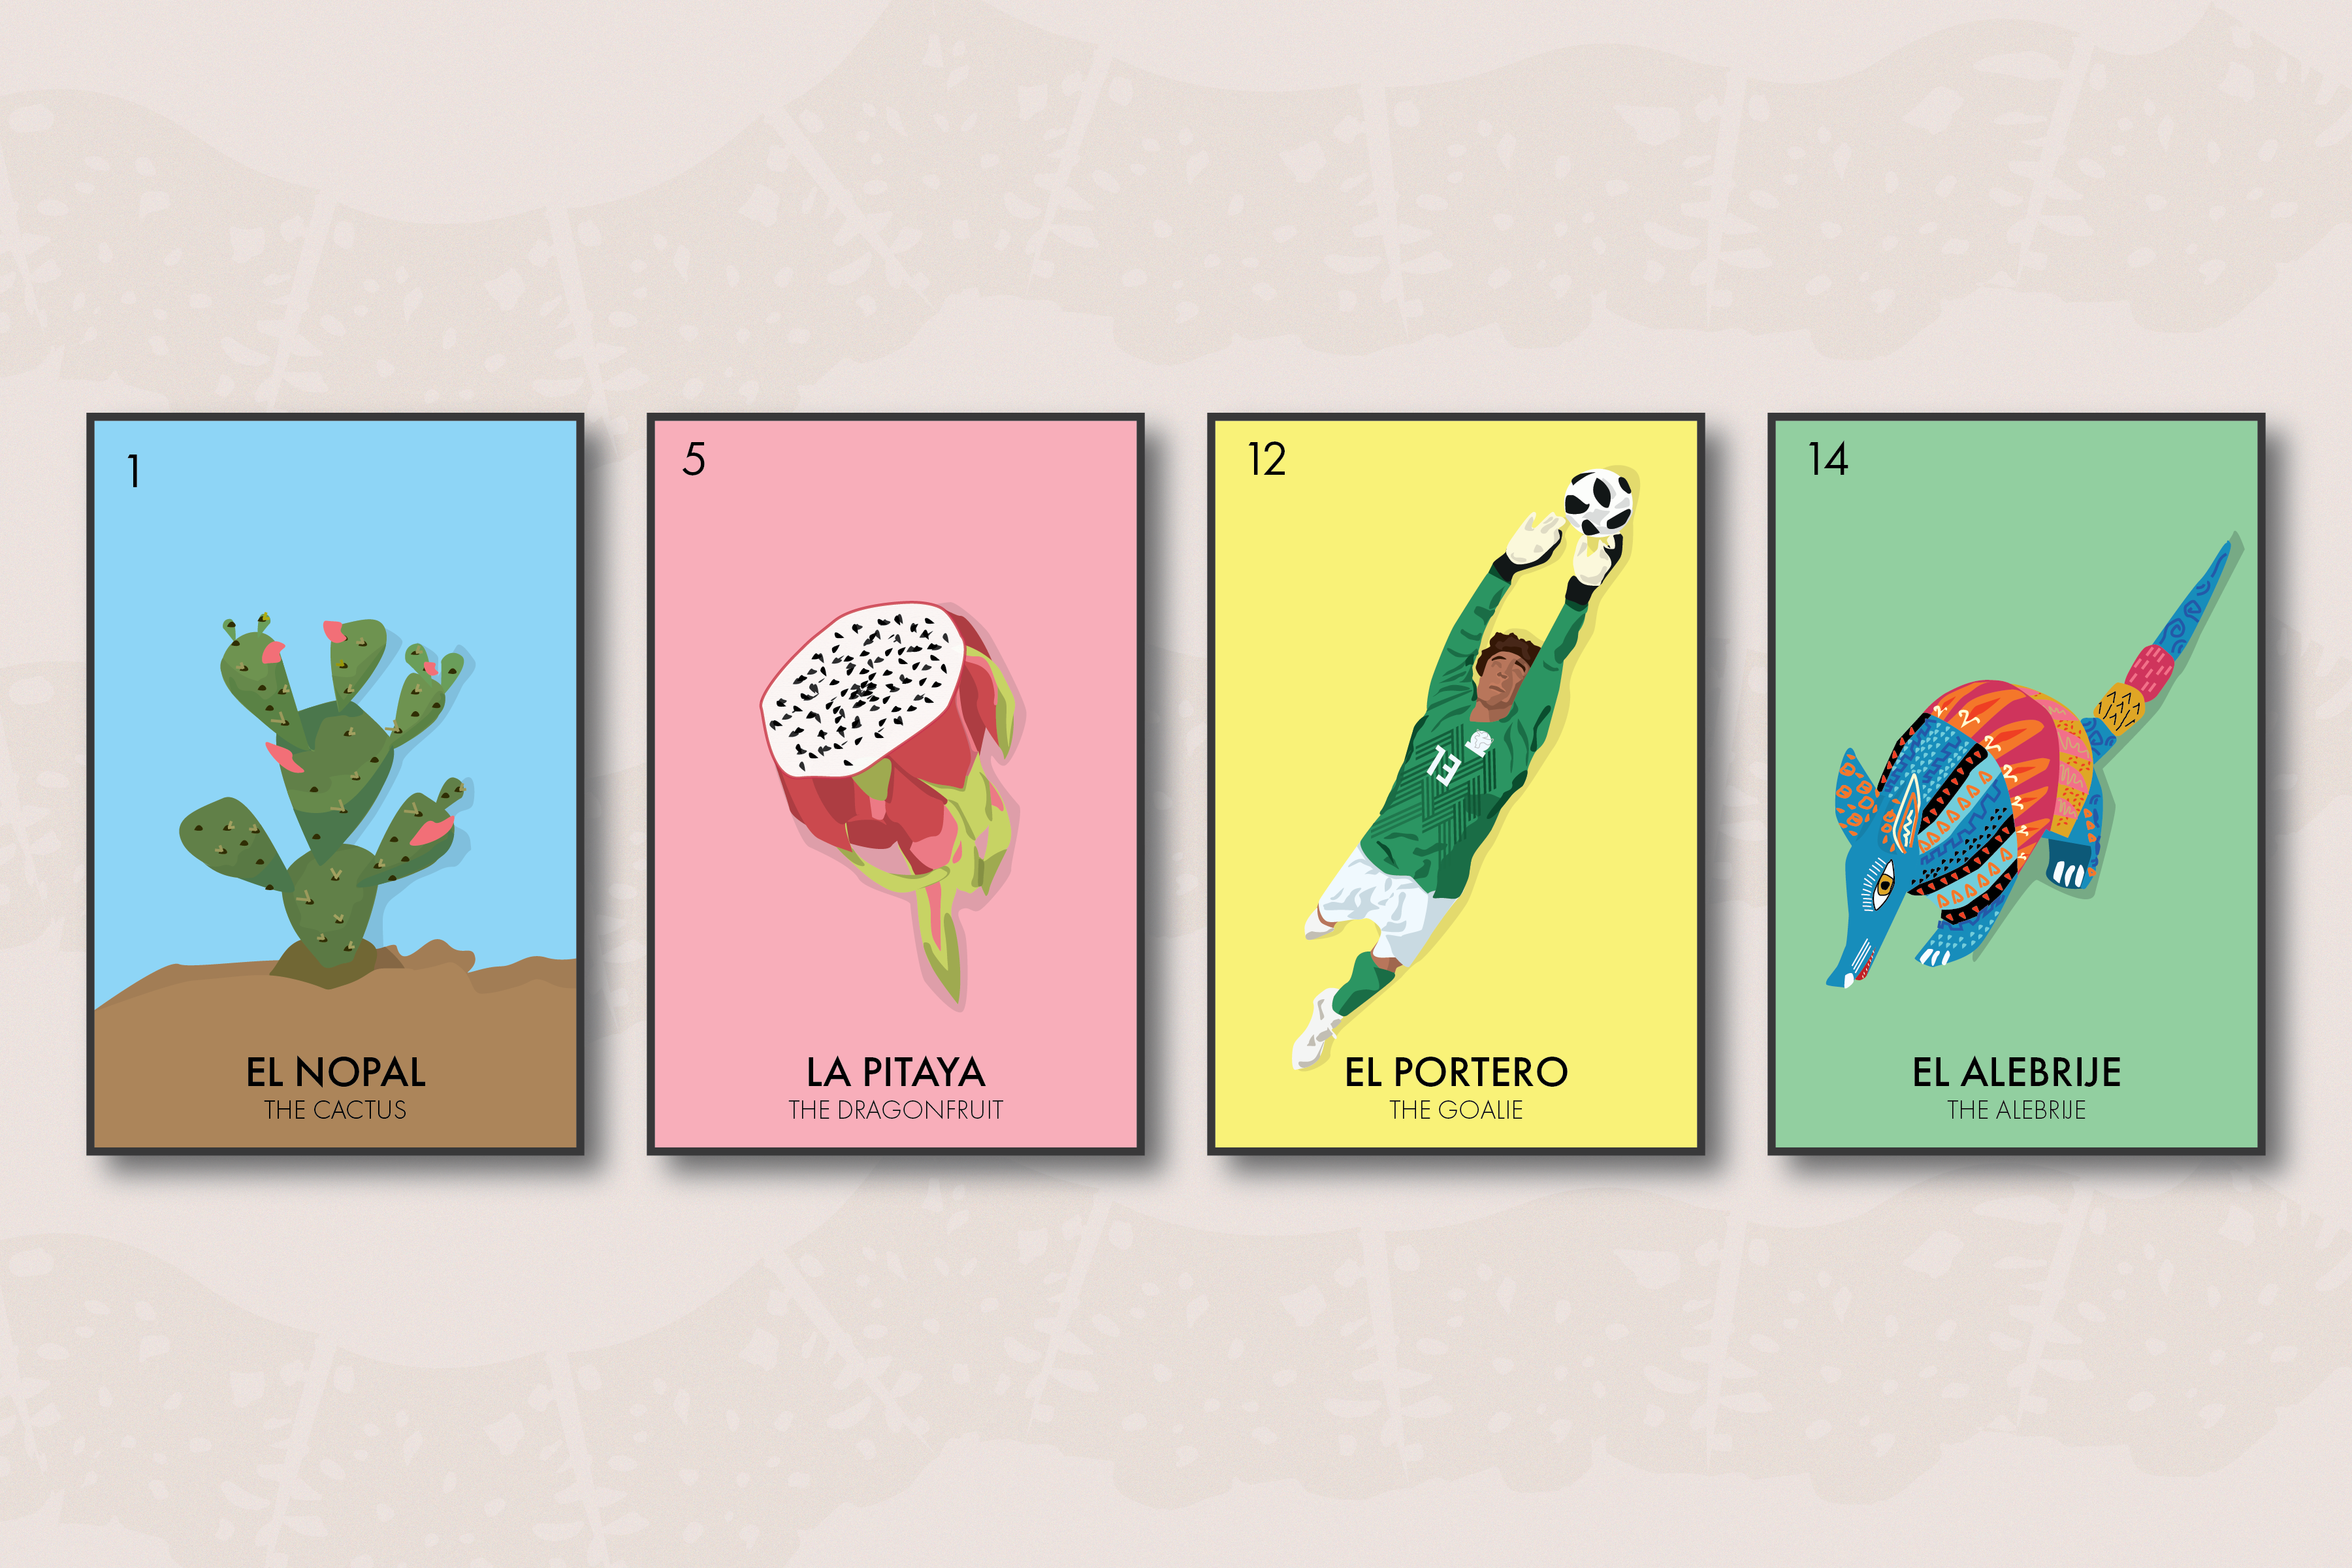 Lotería: A Mexican Card Game